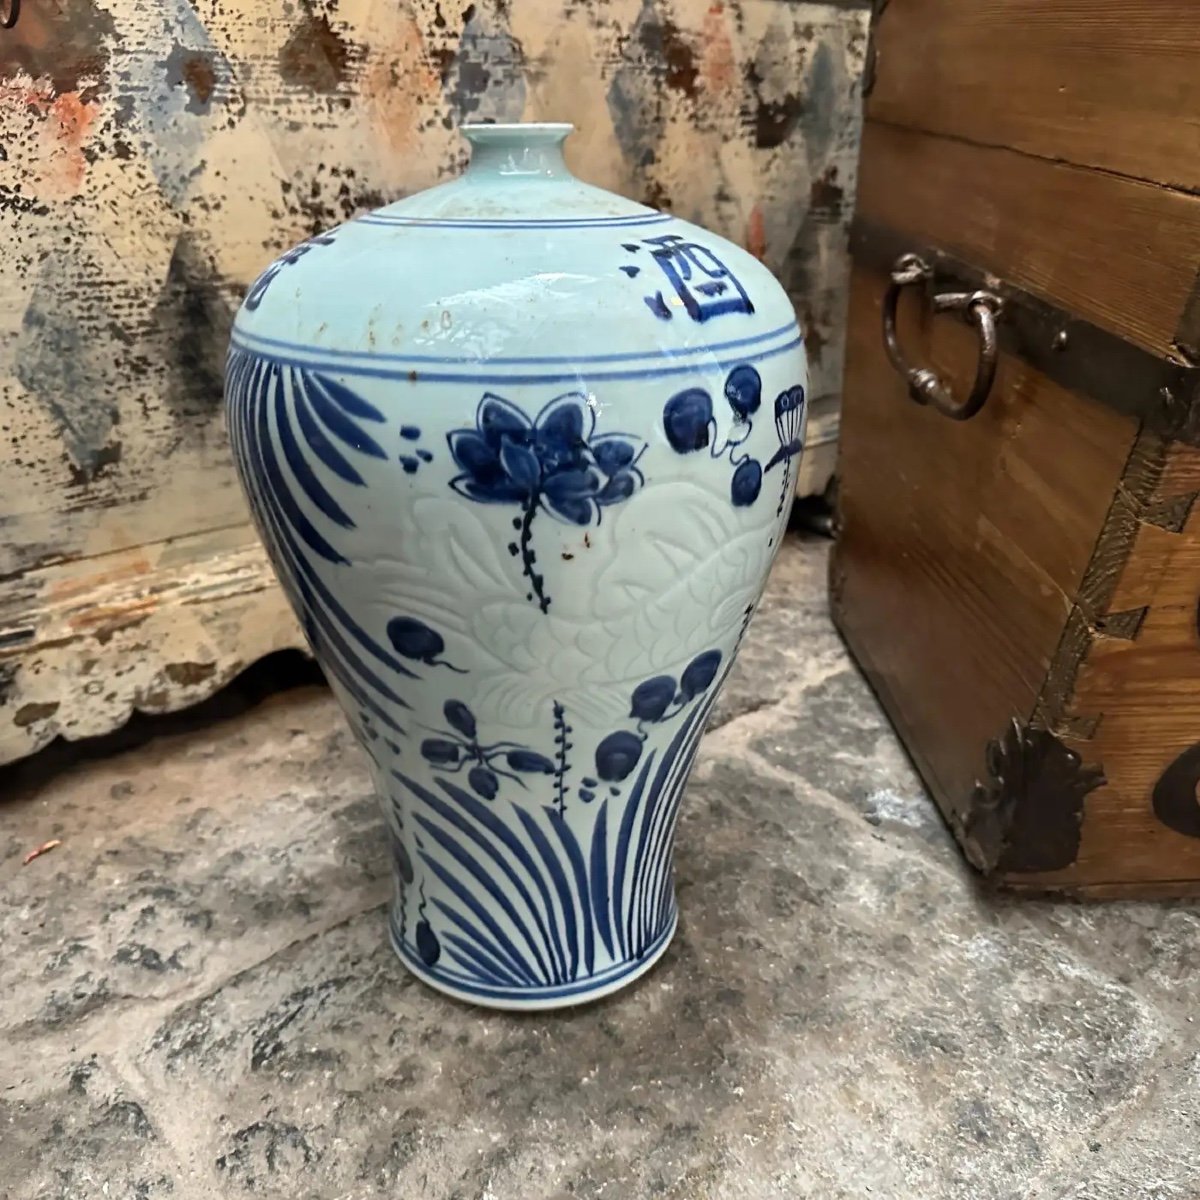  vaso cinese tradizionale in ceramica blu e bianca degli anni '70-photo-1